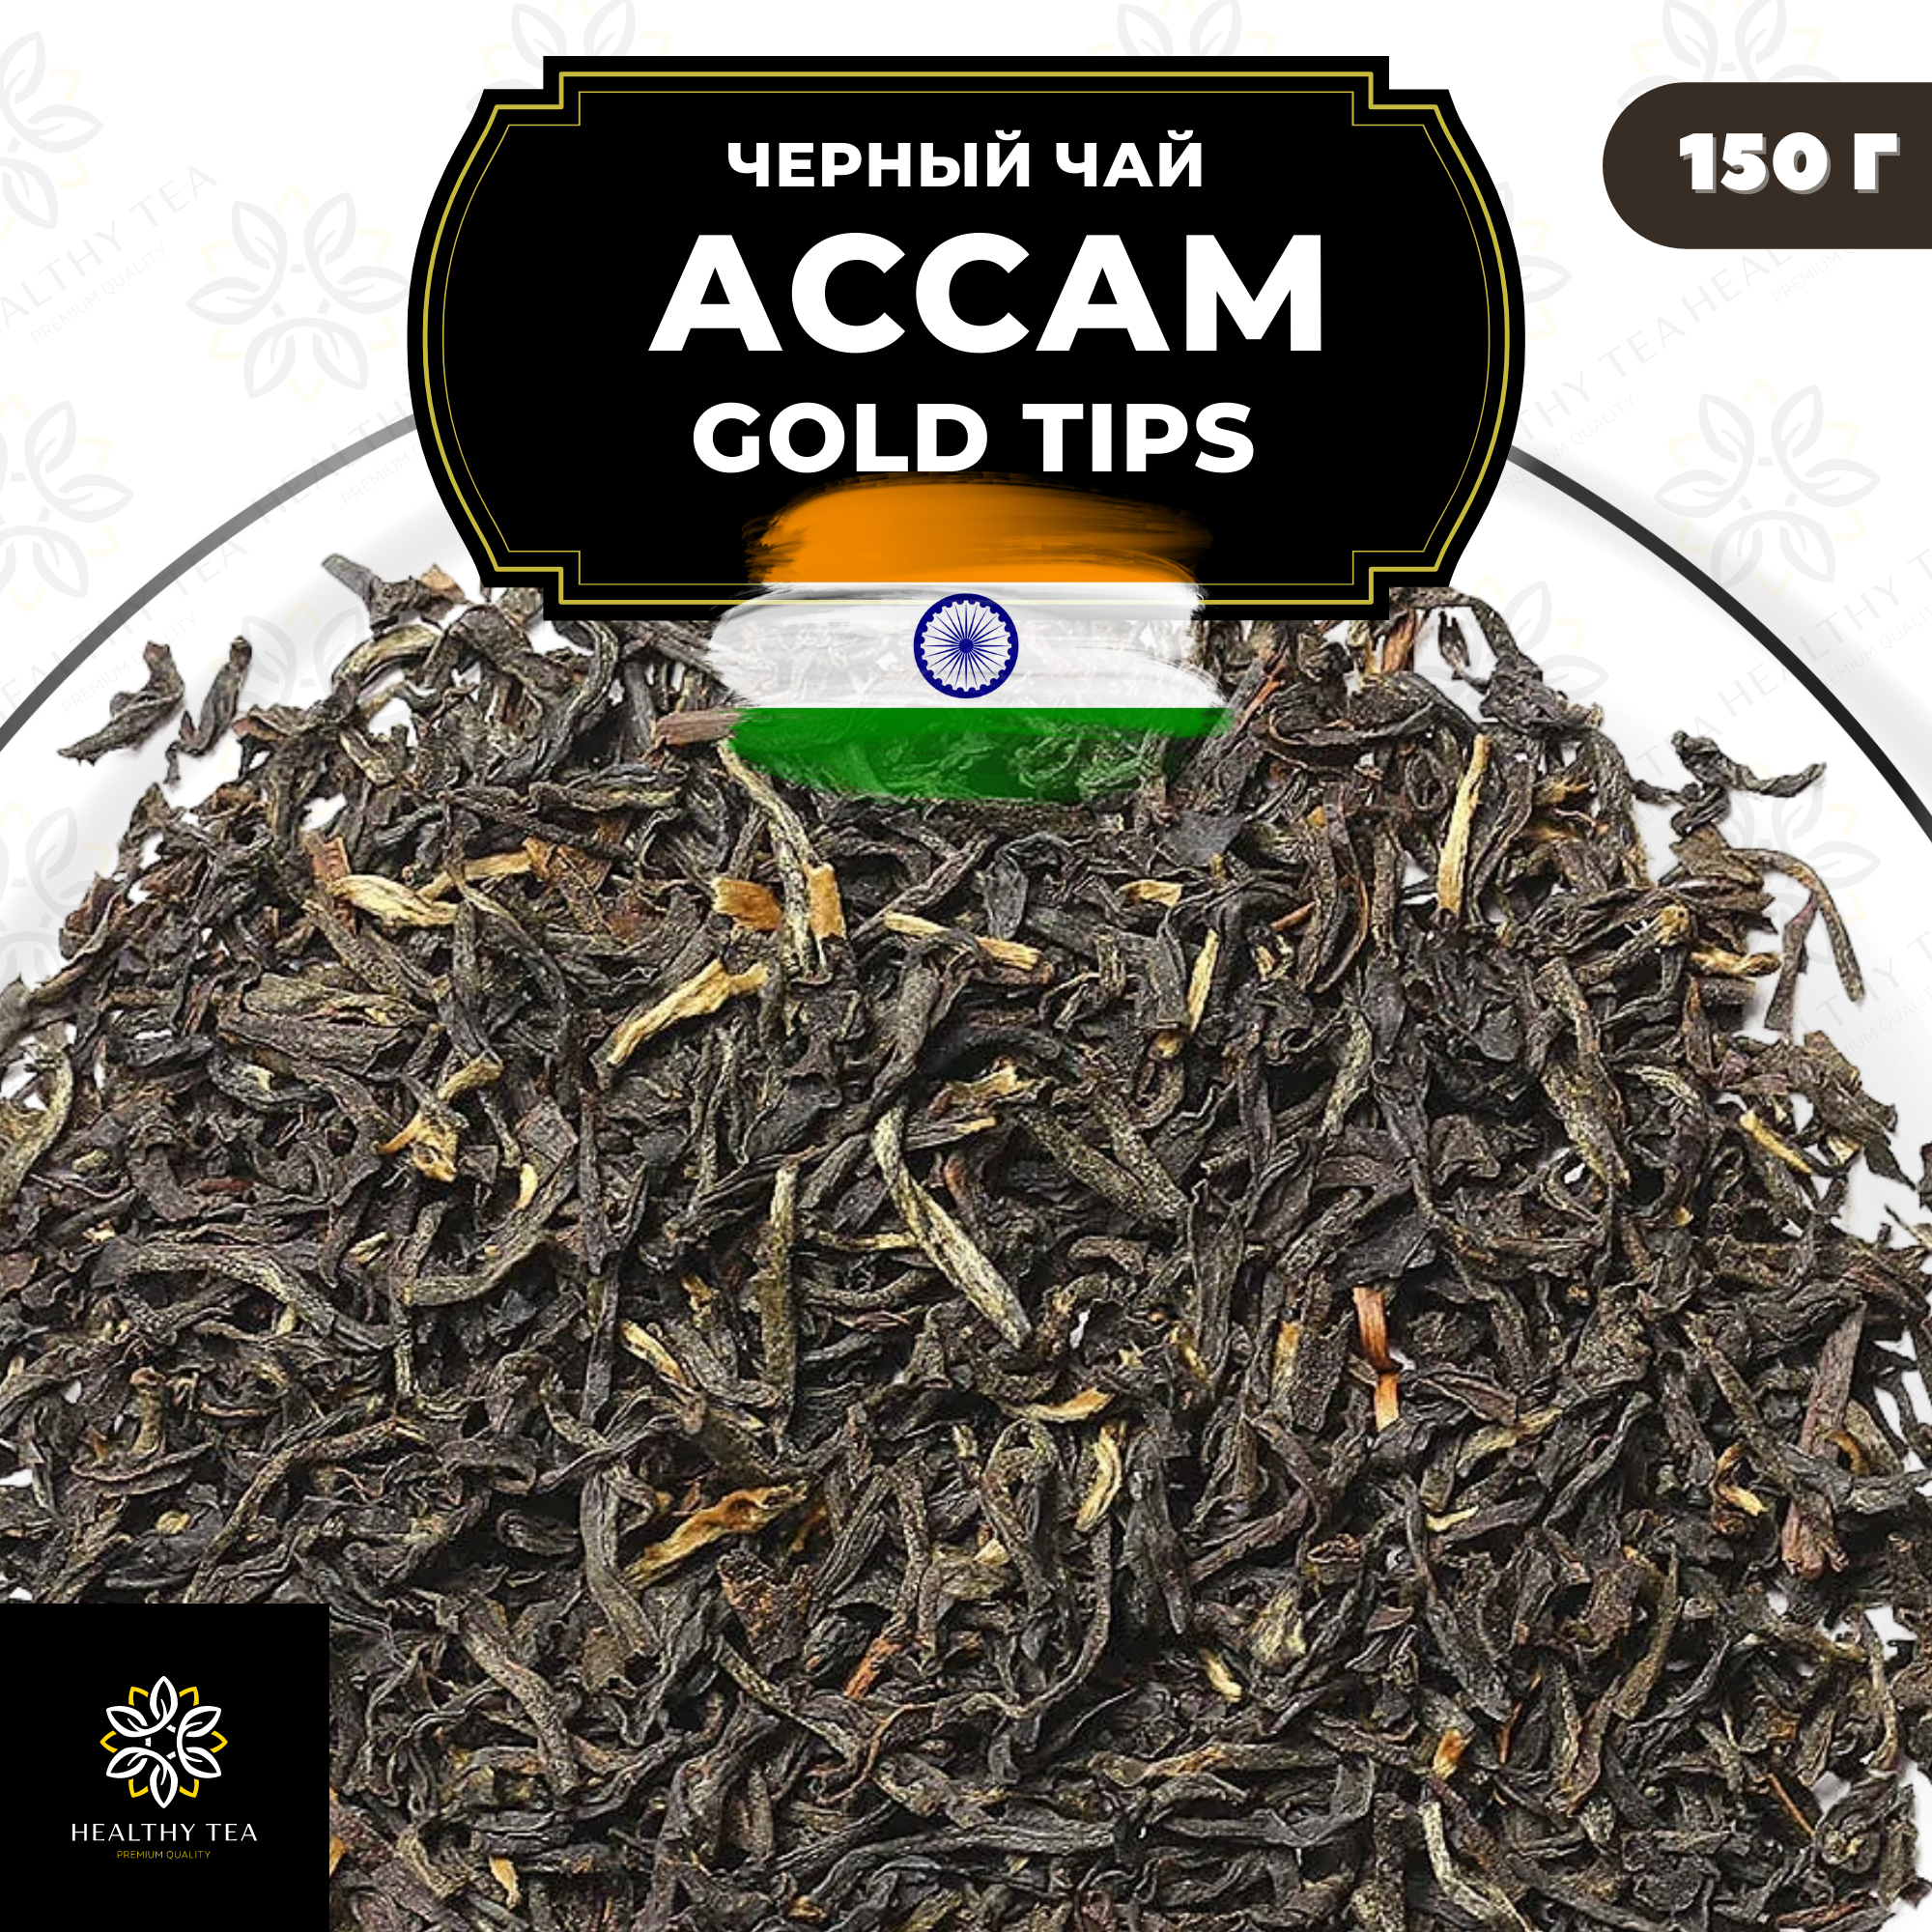 Индийский Черный листовой чай Ассам Gold Tips Полезный чай / HEALTHY TEA, 150 гр